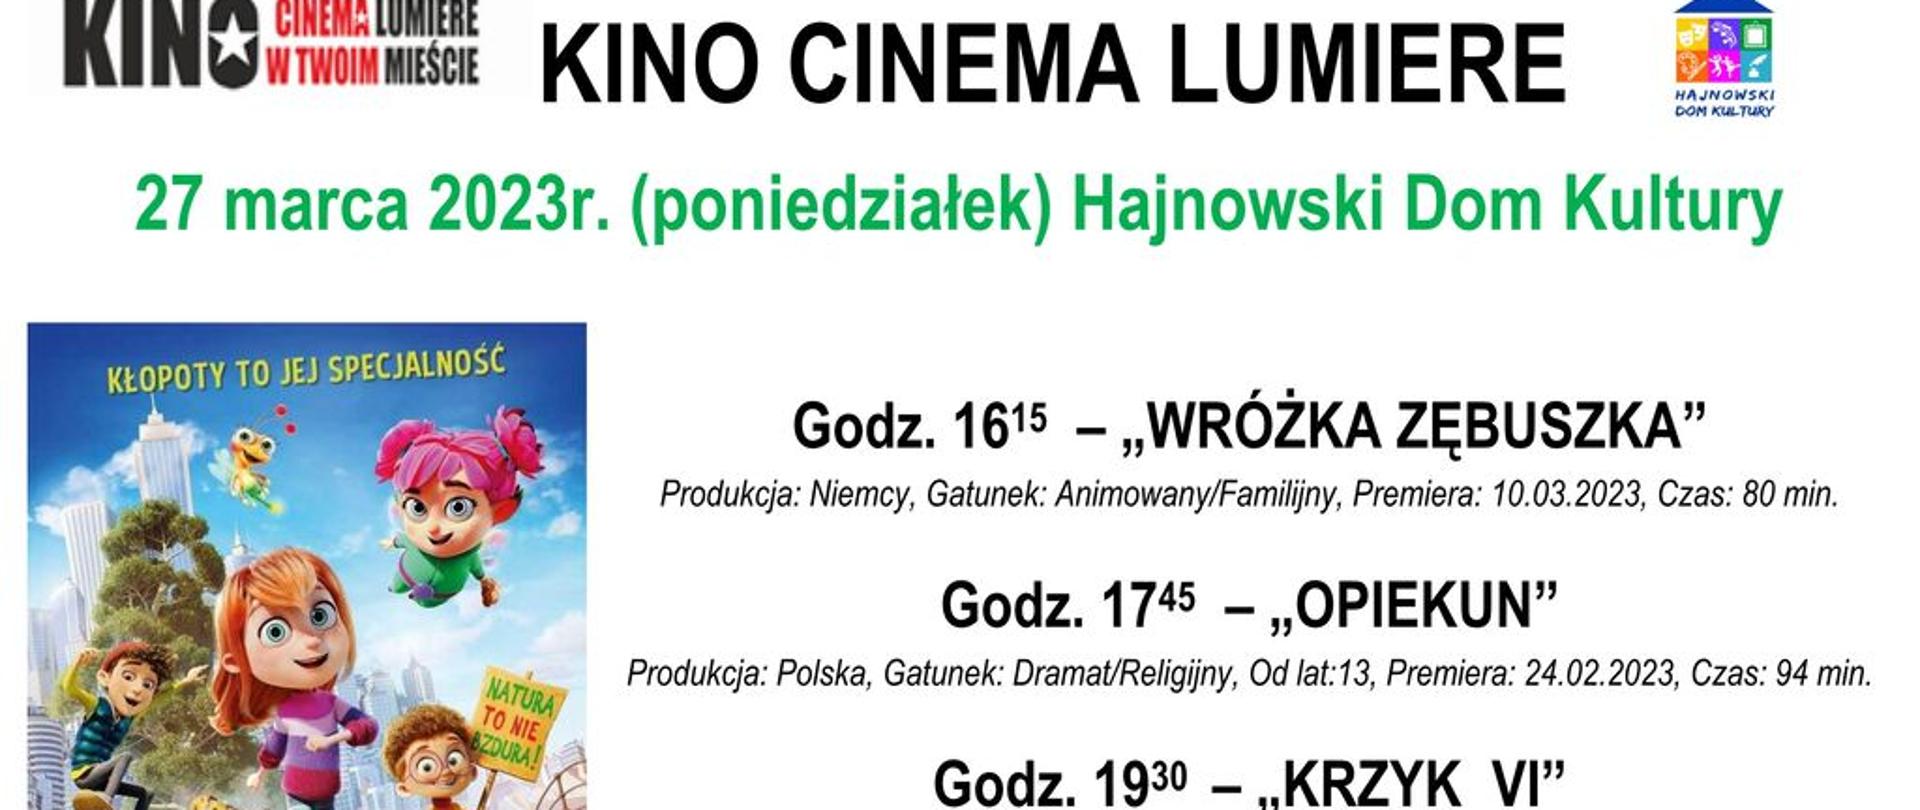 Plakat promujący wydarzenie - na białym tle informacje o tytułach filmów wraz z godziną projekcji, obok plakat promujący film "Wróżka zębuszka"